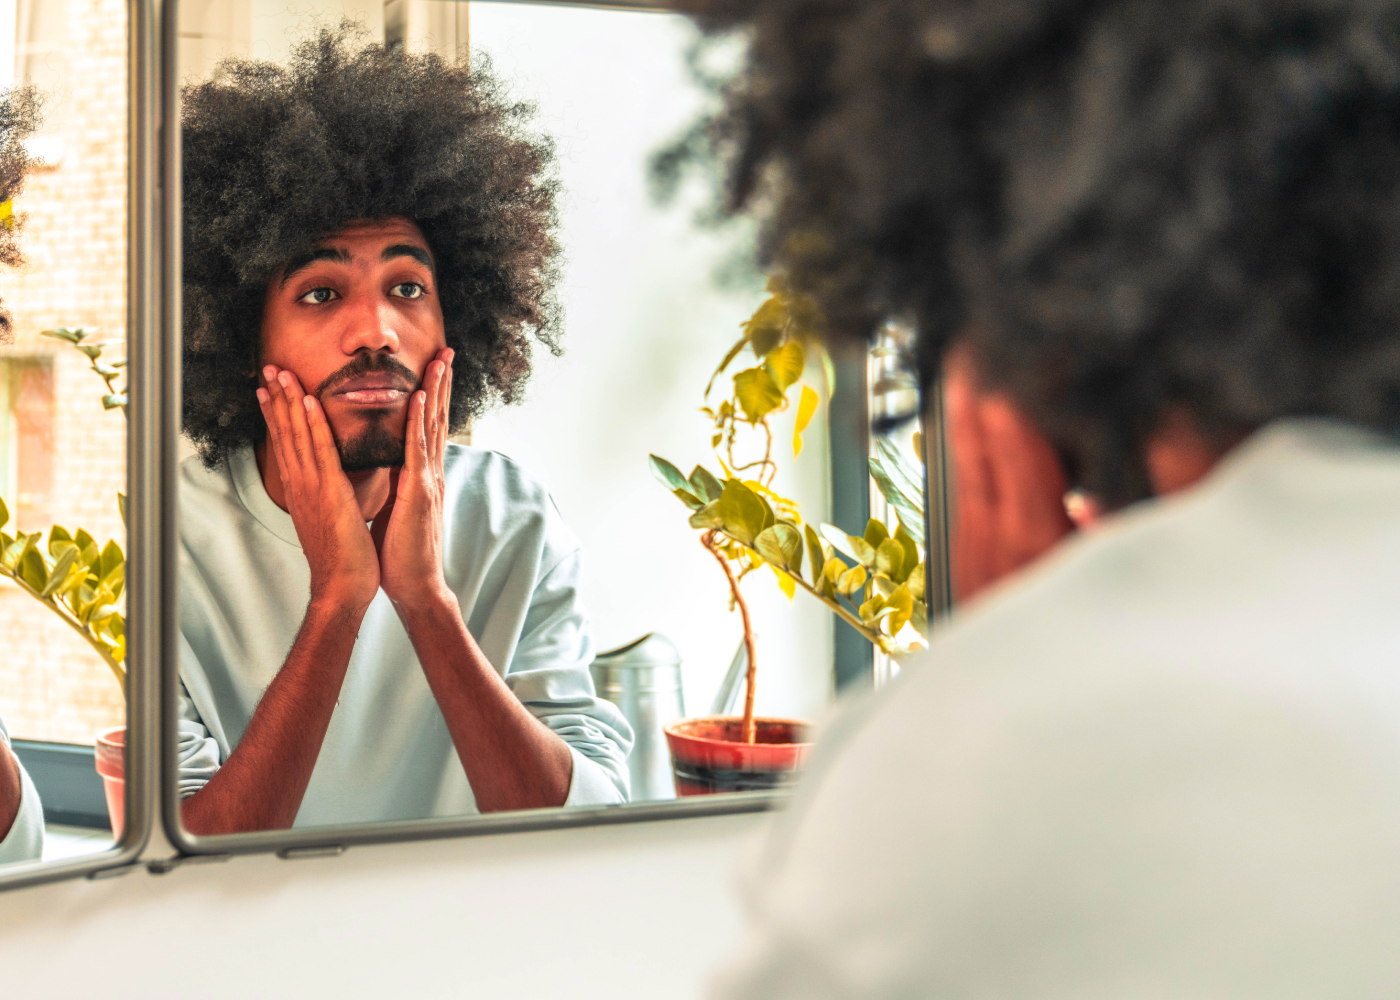 Man looking sideways in mirror at beard.